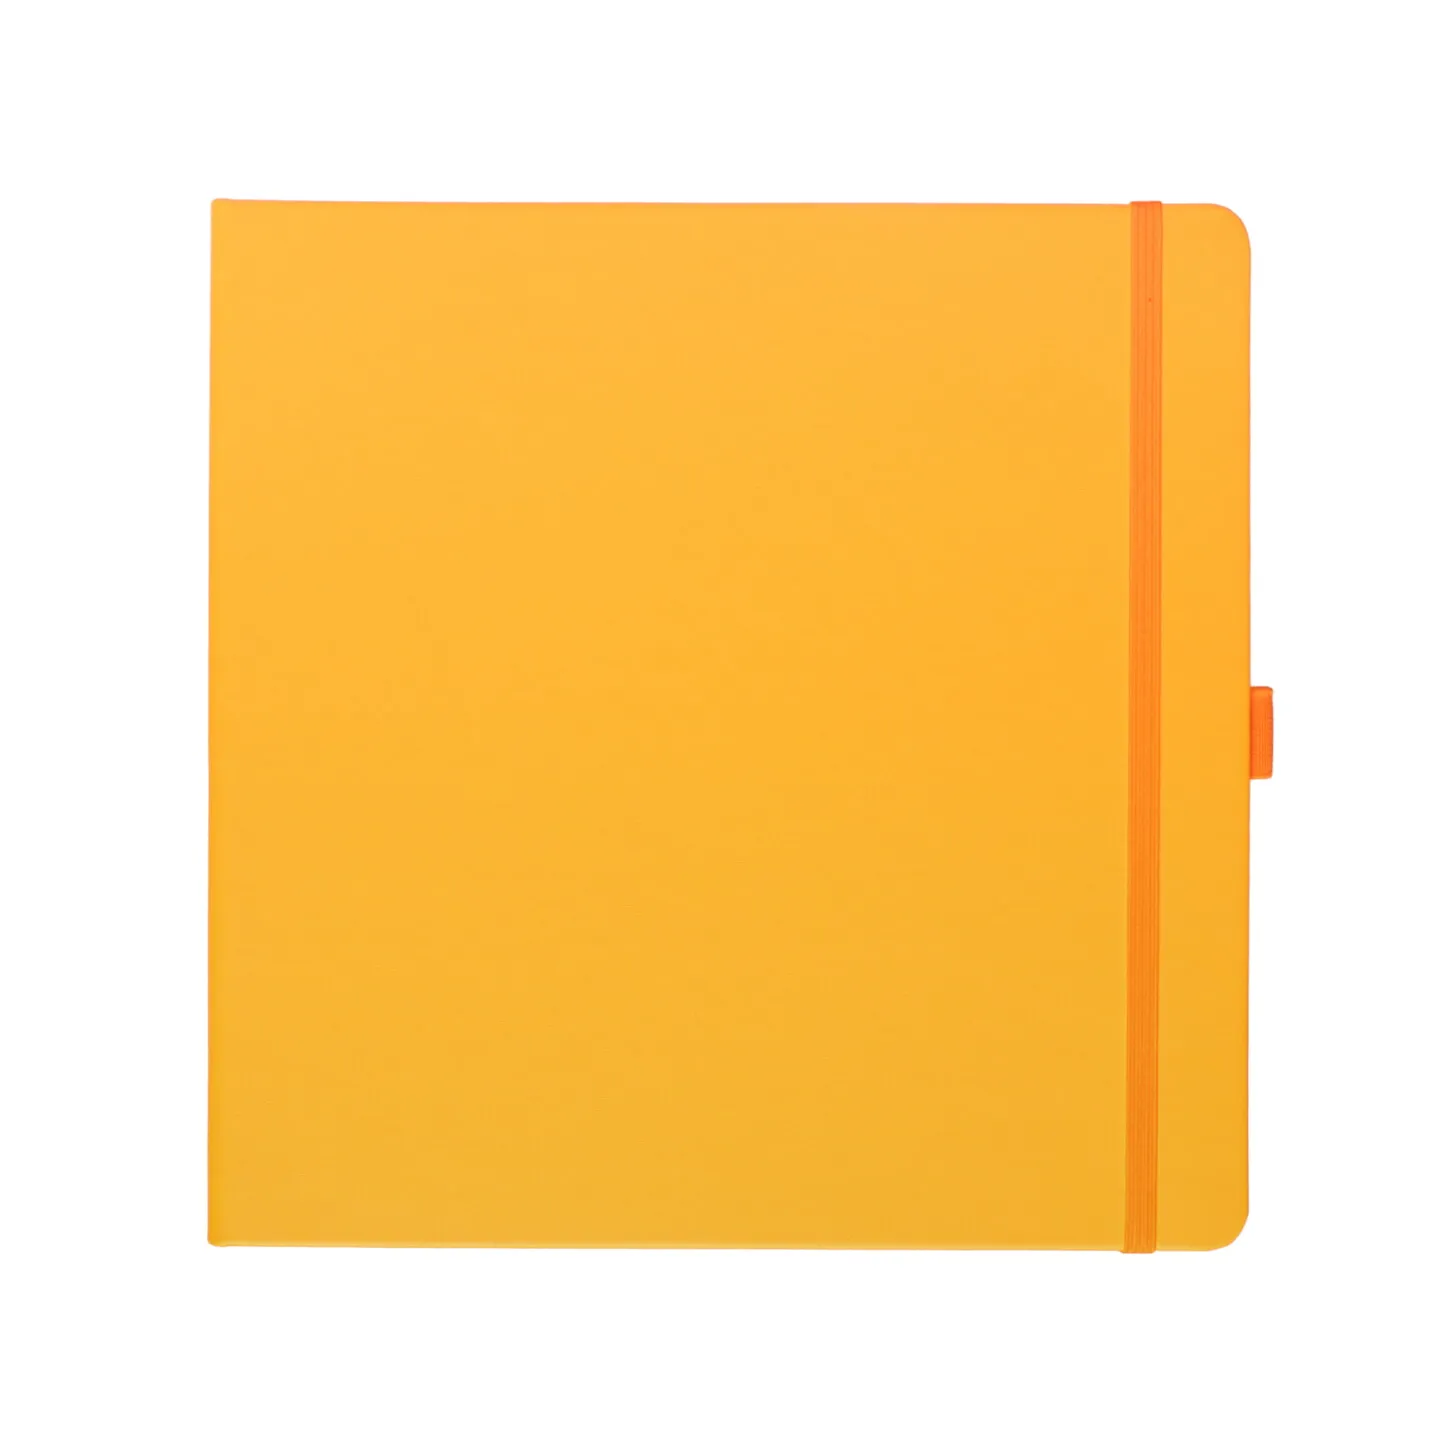 Блокнот для зарисовок Sketchmarker 140г/кв.м 20*20cм 80л (Оранжевый)